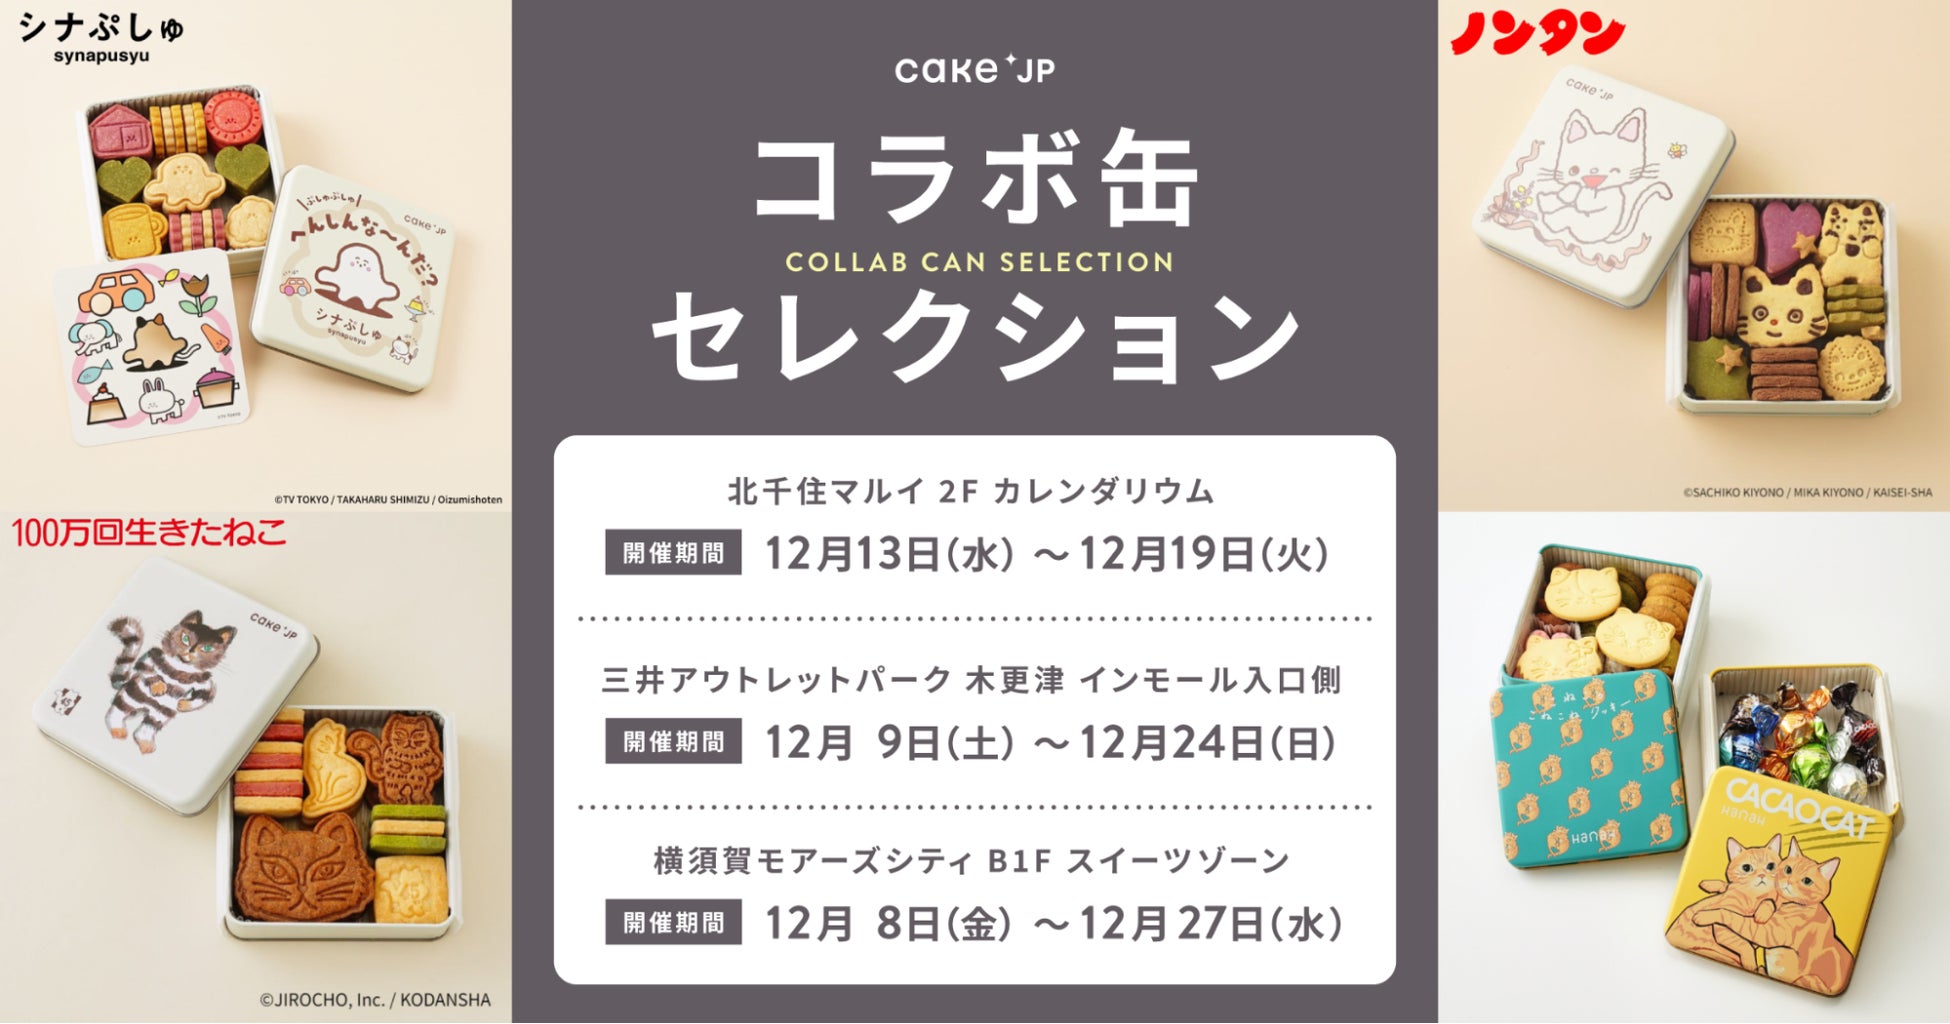 クリスマス・年末ギフトにも最適なCake.jp オリジナルの大人気クッキー缶のポップアップ開催！東京・神奈川・千葉のアウトレットモールなどにて出店。